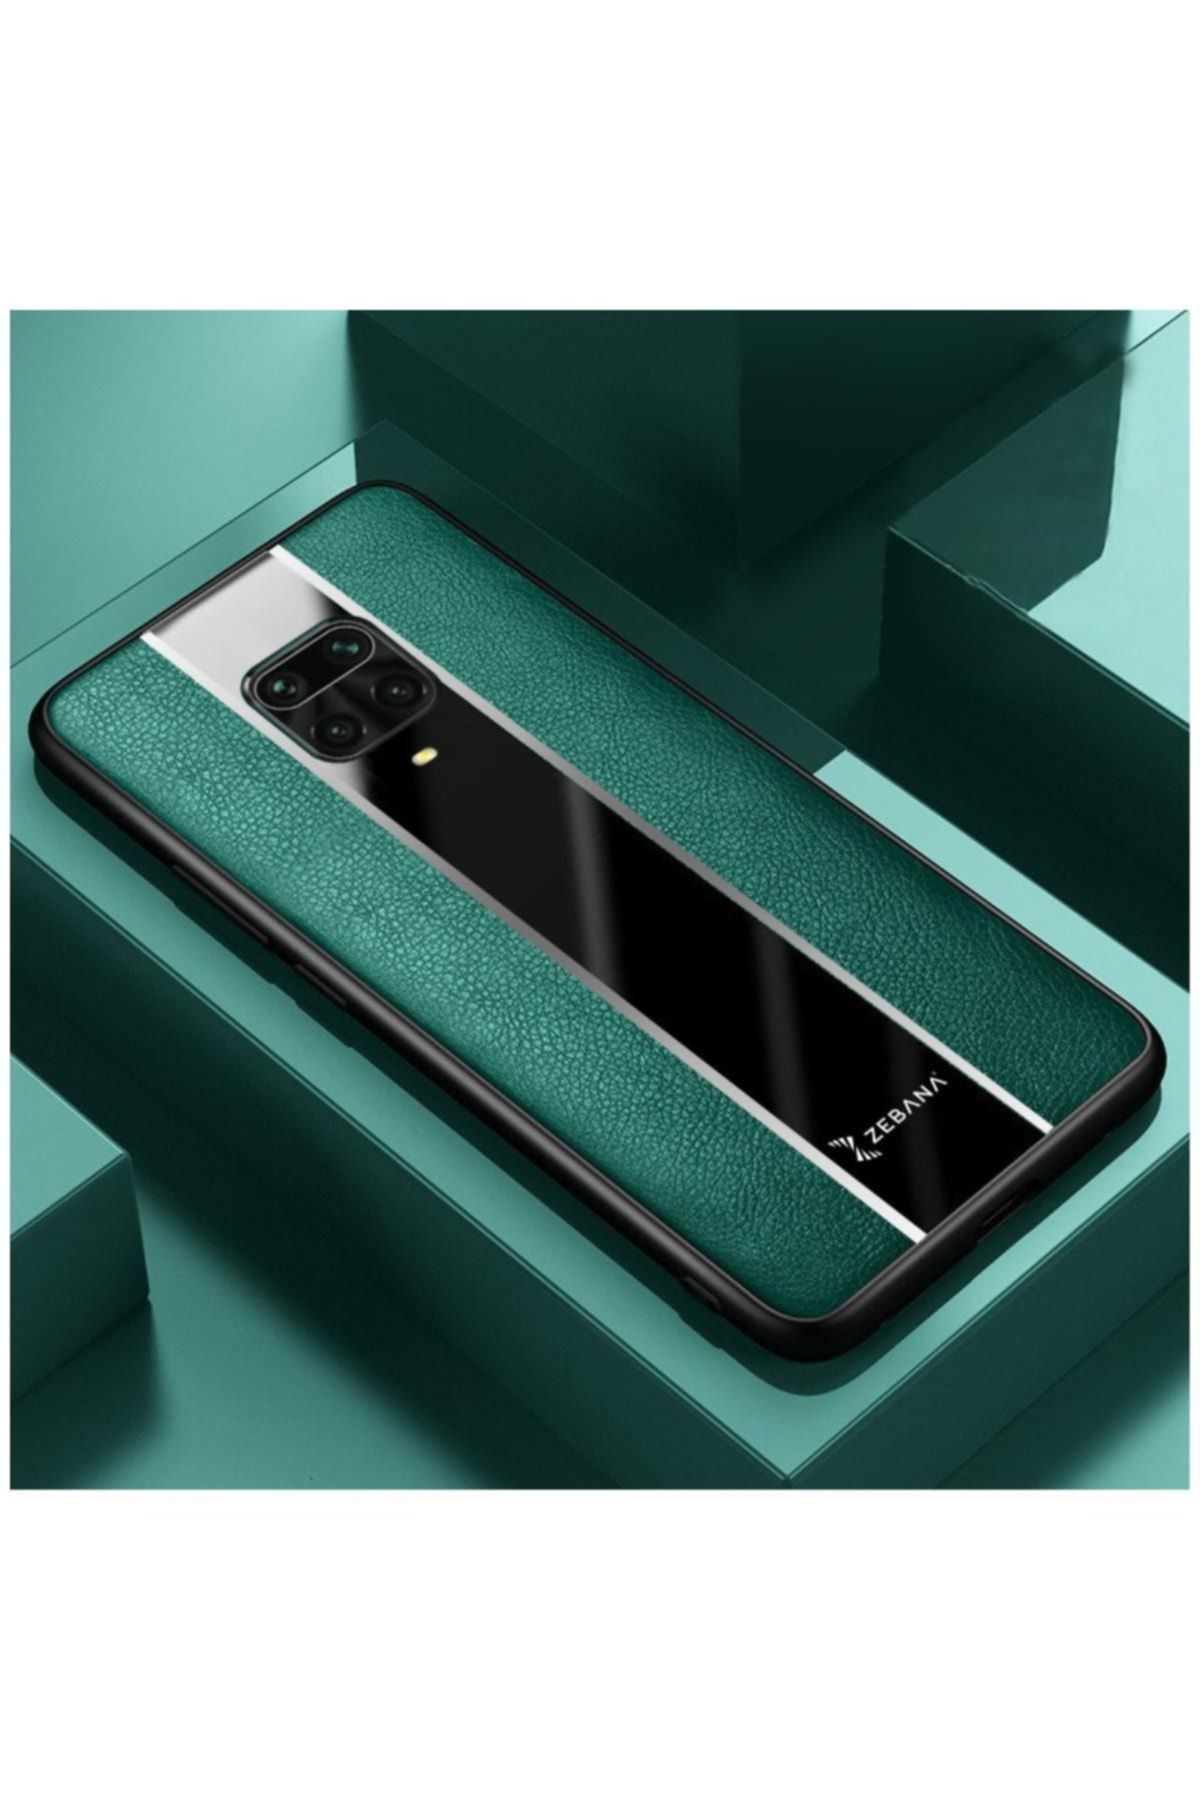 Zebana Xiaomi Redmi Note 9 Pro Uyumlu Kılıf Premium Deri Kılıf Yeşil Fiyatı Yorumları Trendyol 2290